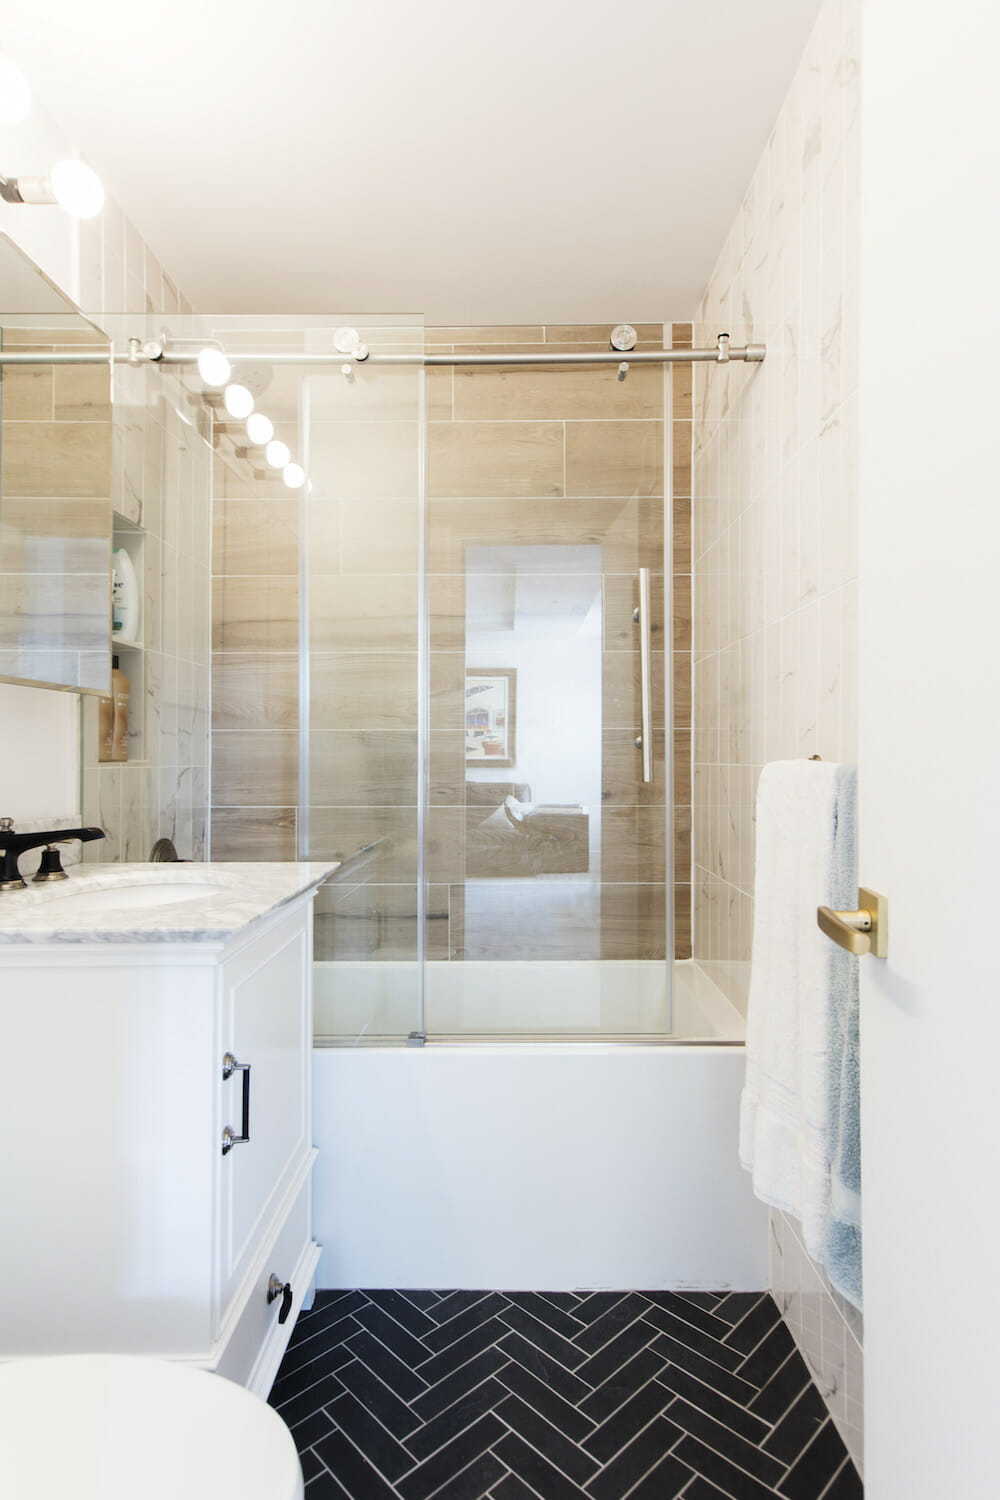 designer renovation, home renovation, bathroom renovation, black and white tile, glass shower door